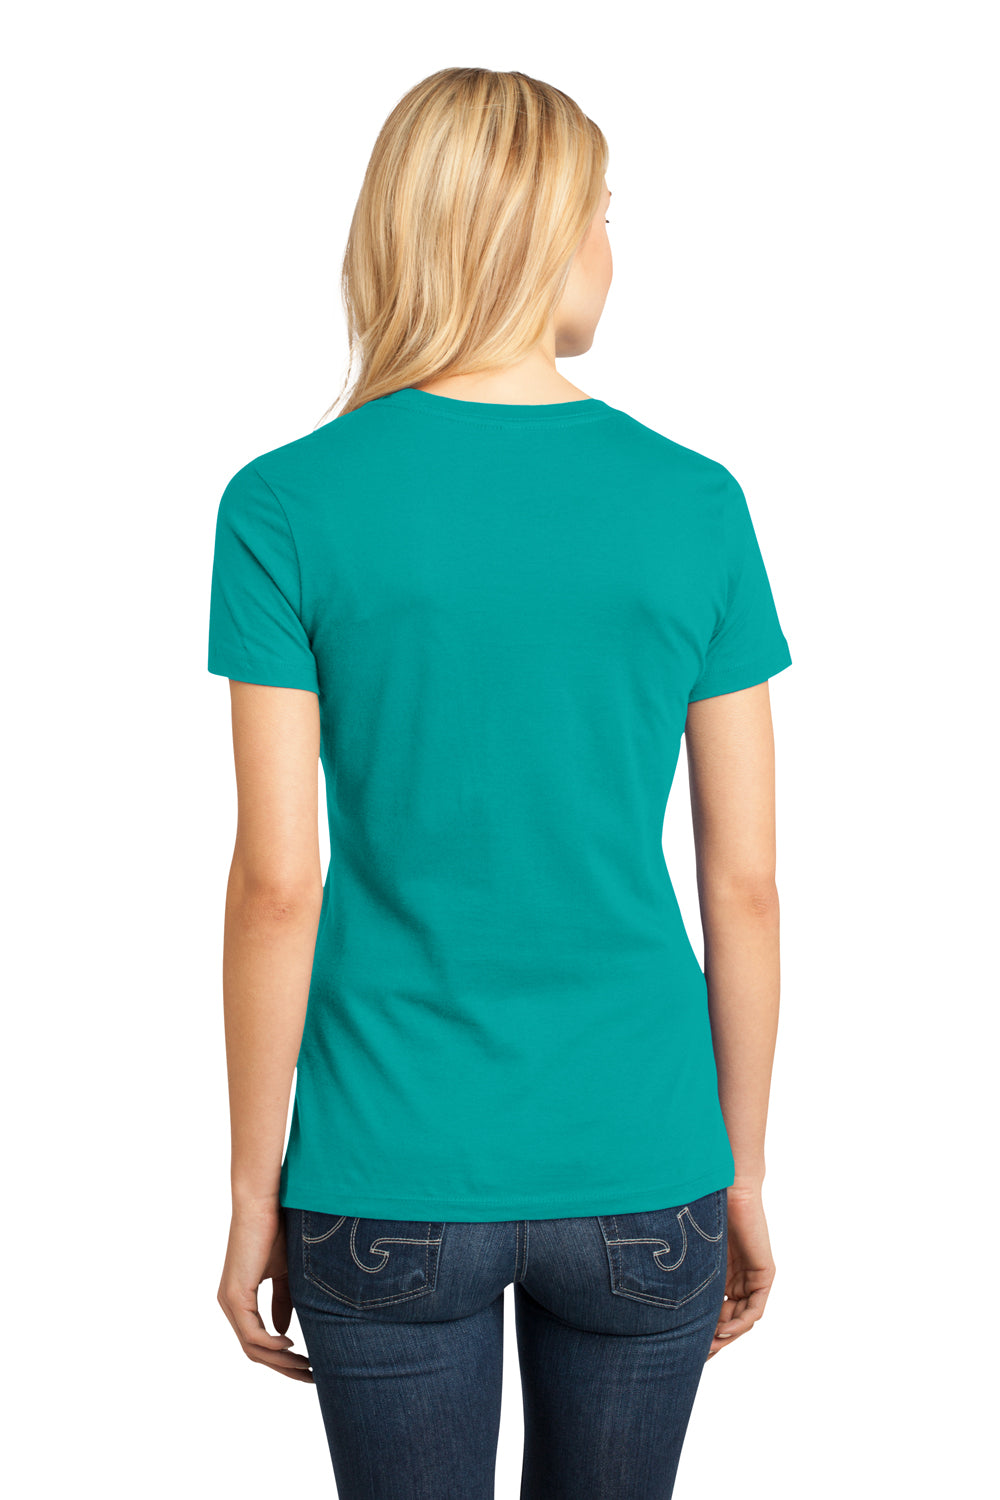 District DM104L Womens Perfect Weight Short Sleeve Crewneck T-Shirt Jade Green Back